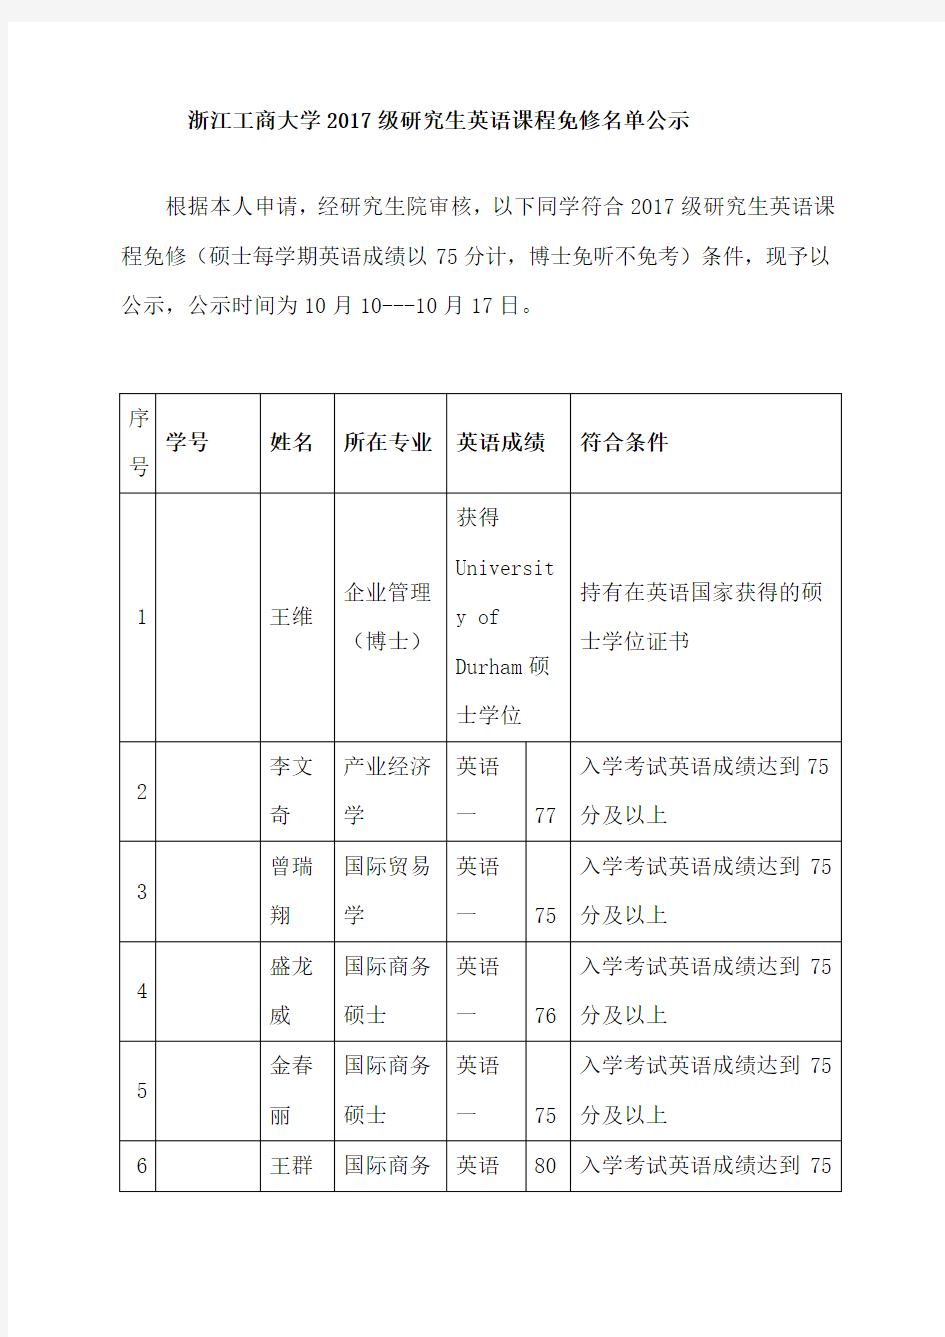 浙江工商大学2017级研究生英语课程免修名单公示